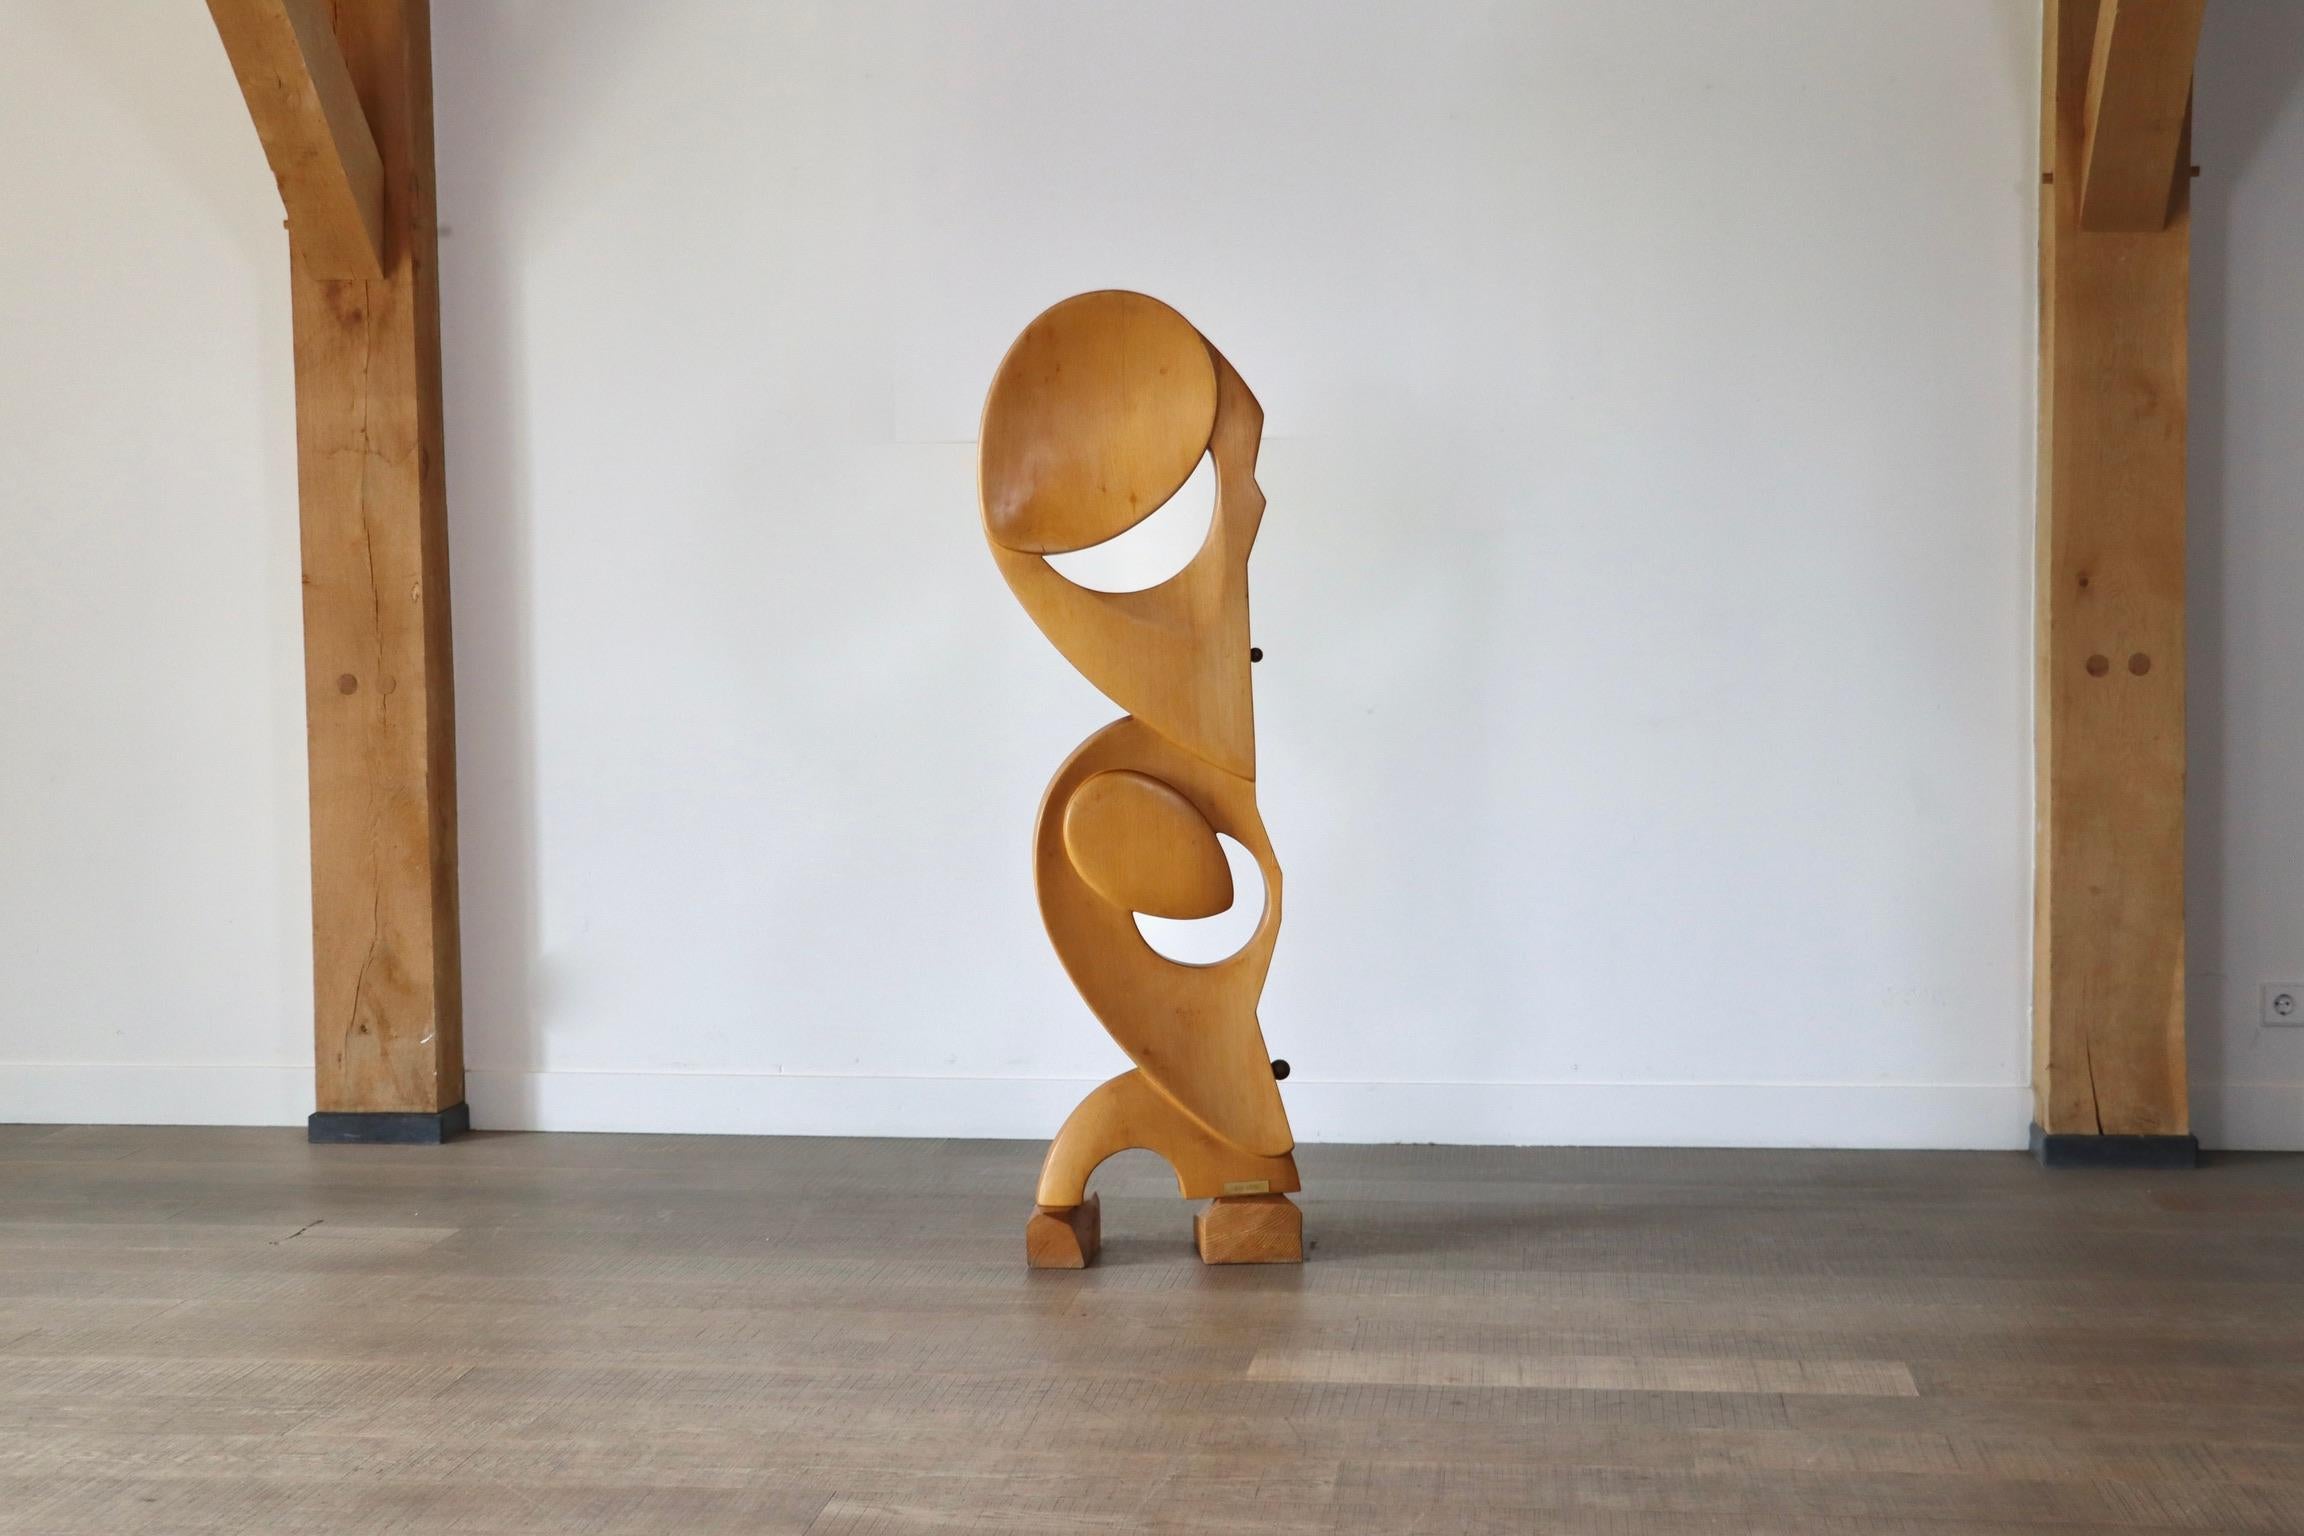 Belle sculpture en bois avec détails en laiton, sculptée dans du bois de frêne et signée par S. do Lato, Italie, années 1970. Ses formes organiques sont accentuées par deux détails en laiton de forme ronde sur les côtés, ajoutant une touche